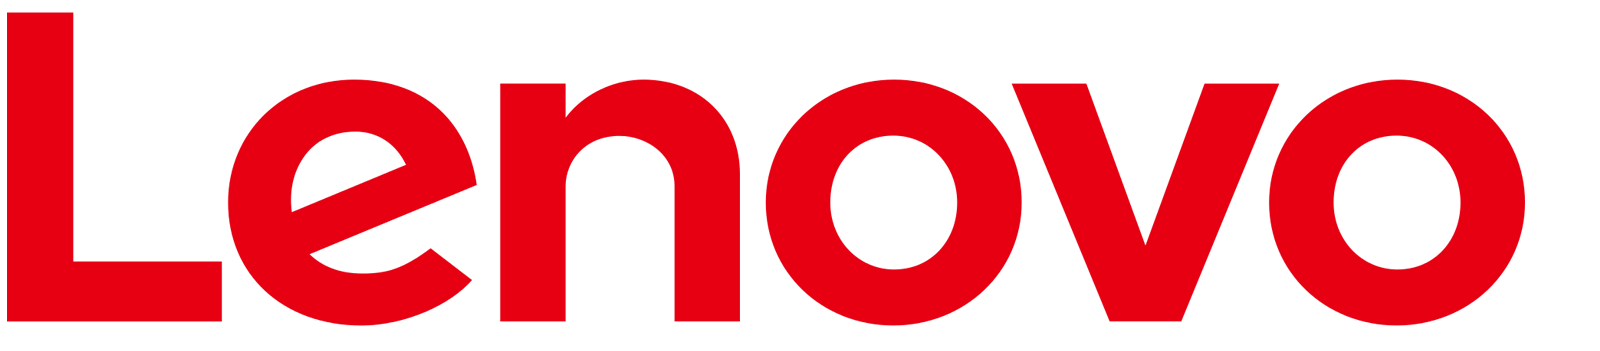 Lenovo 로고 PNG 그림